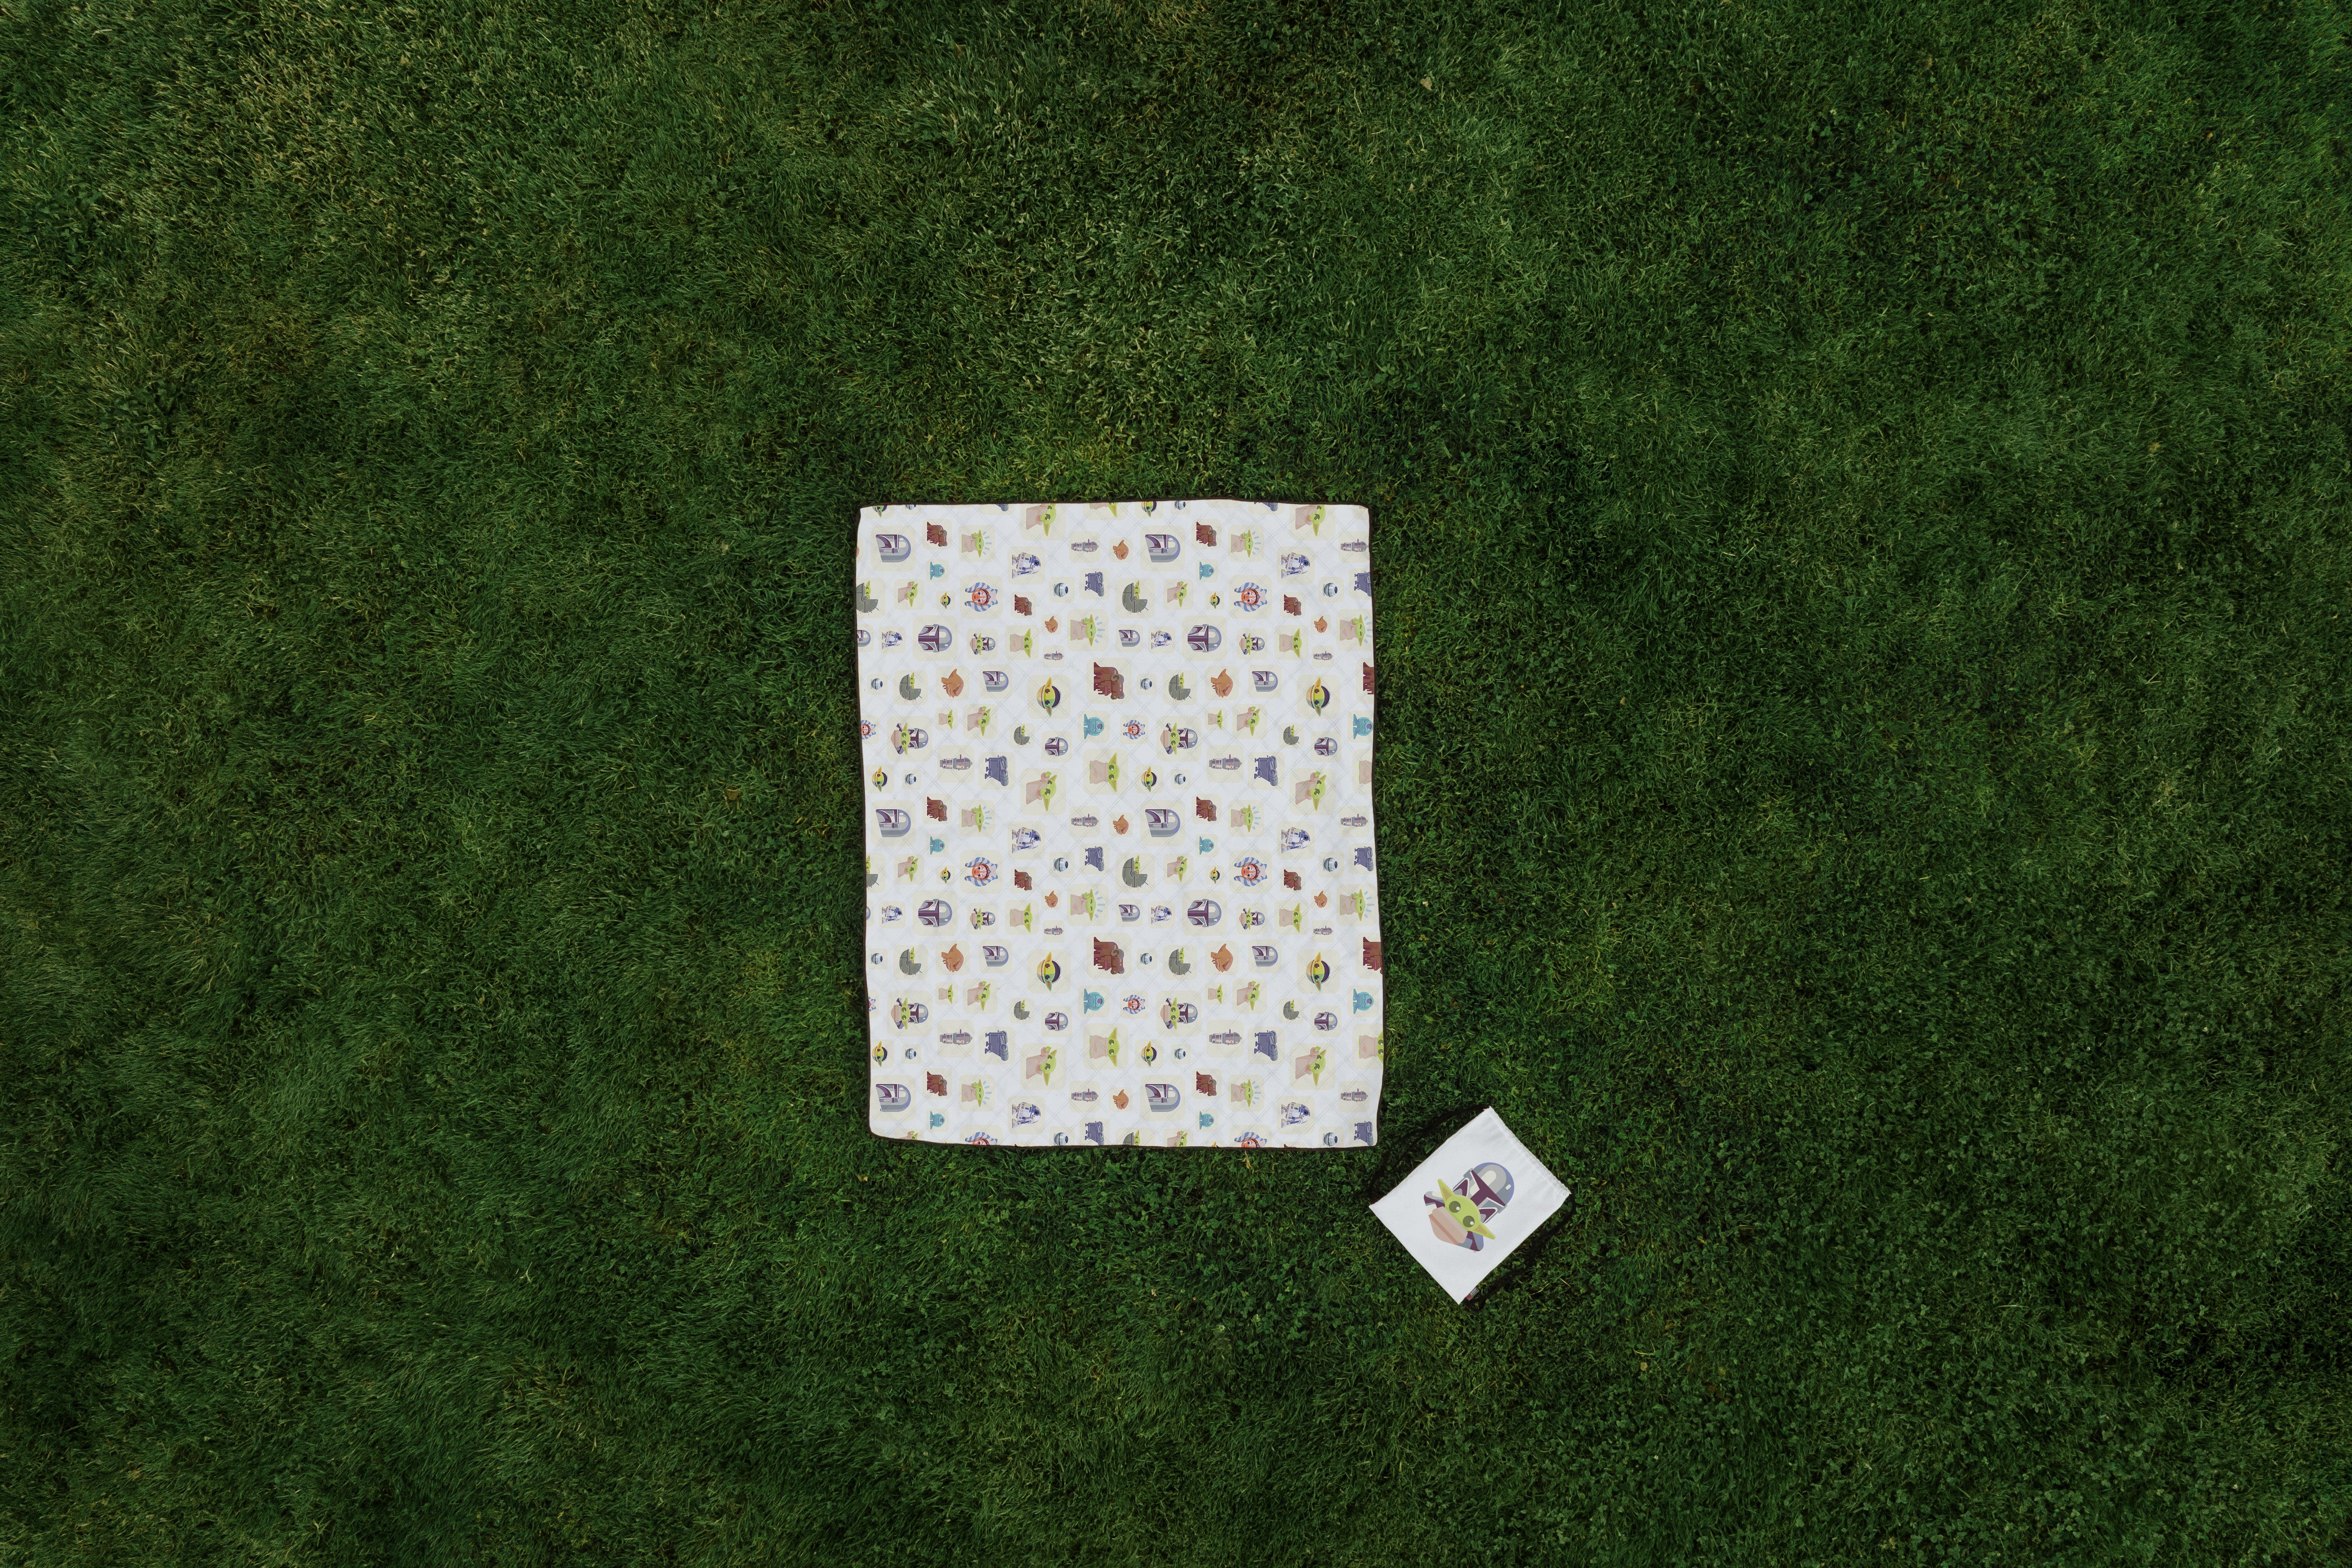 Mandalorian Grogu - Impresa Picnic Blanket